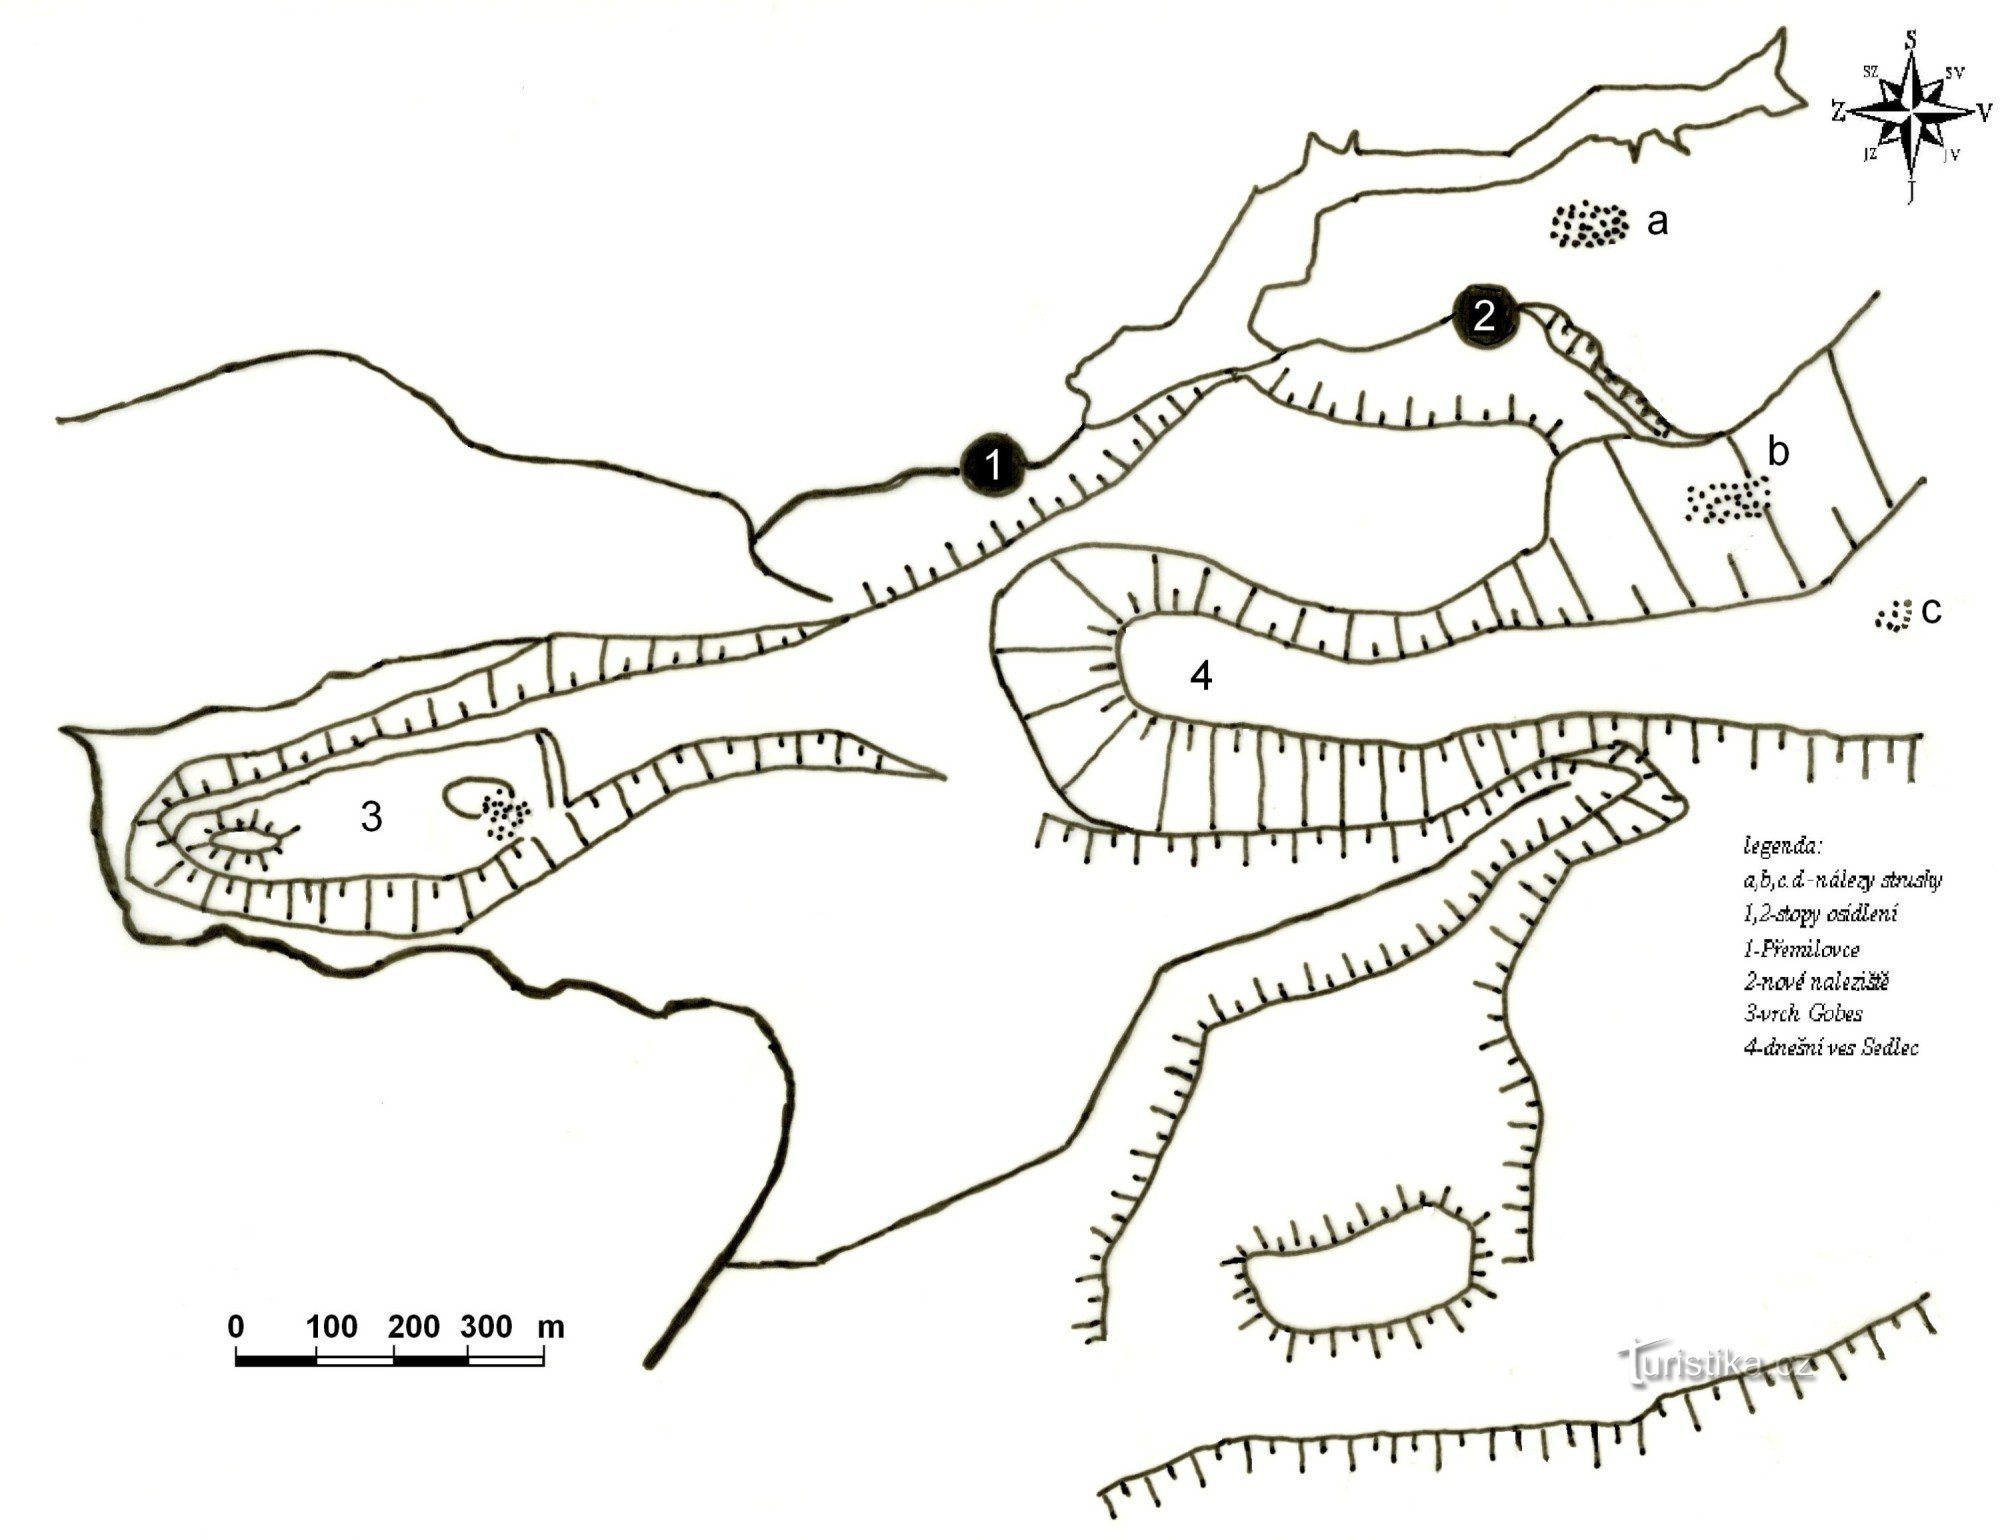 левый холм Гобес, точка 1 - Пржемиловице, точка 2 - памятник раннего средневековья